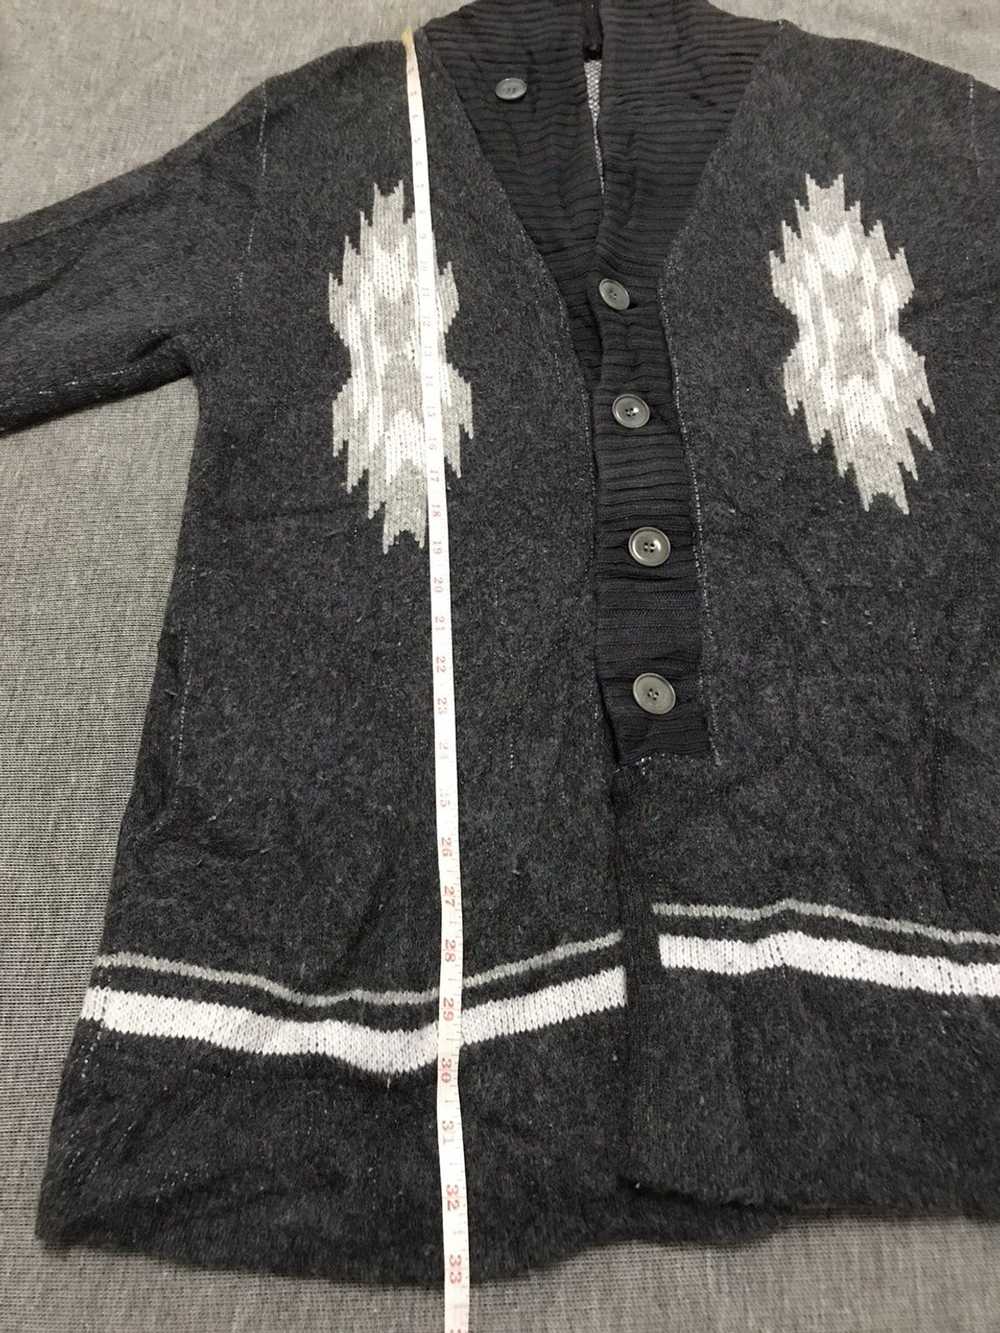 Japanese Brand Unisex Cardigan Sweater Native Chi… - image 10